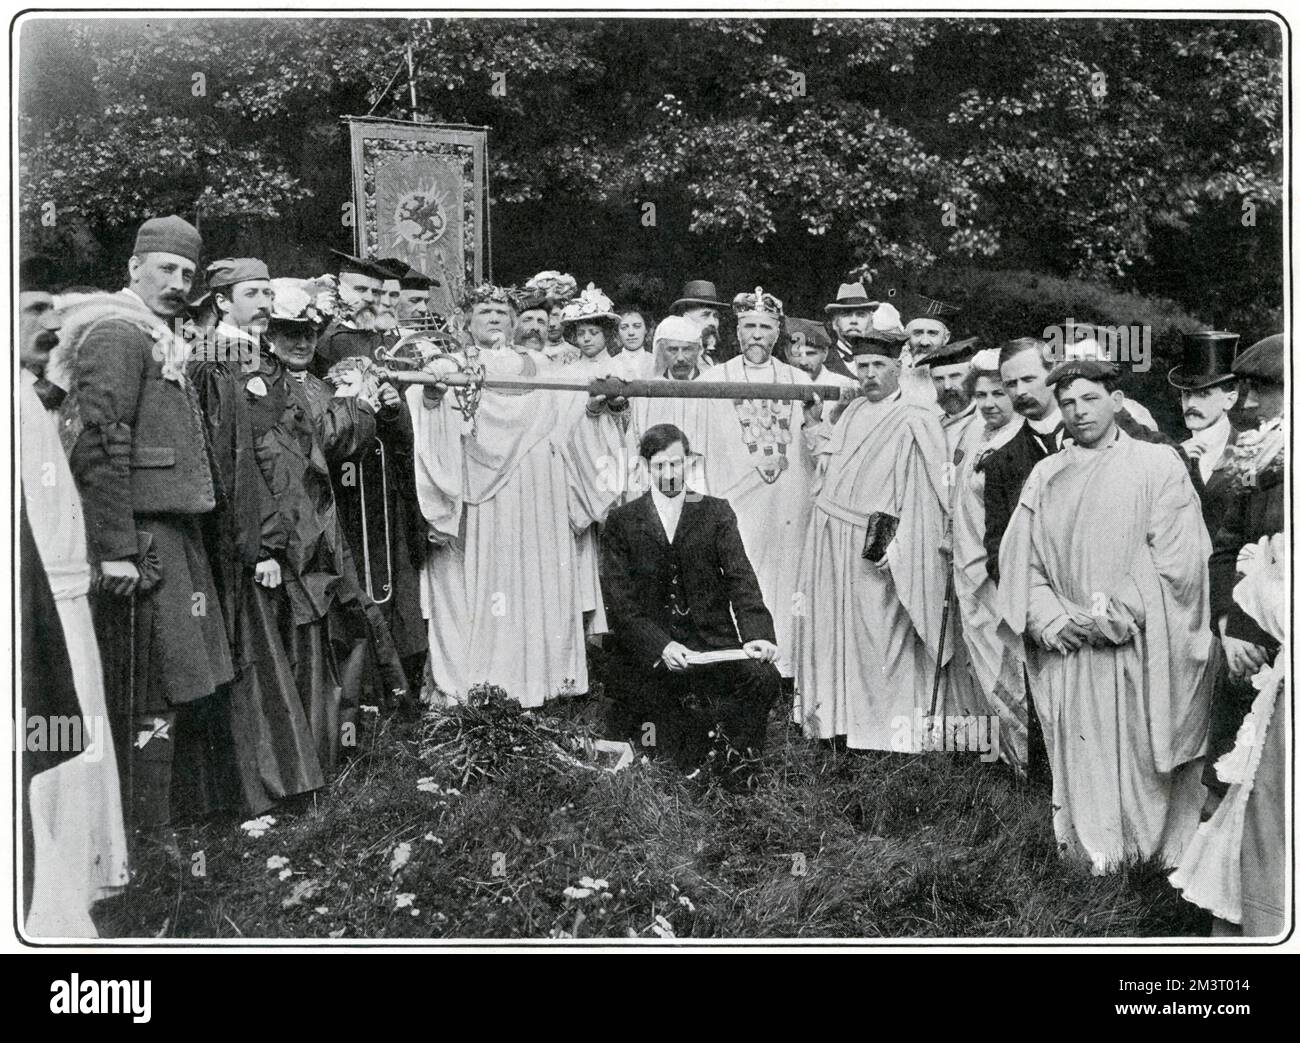 Vorsitz im Bard des Jahres im Bangor Eisteddfod im Jahr 1902. Henry Pagt, 5. Anglesey, berühmt für Exzentriker, der sich gerne verkleidet und Amateurdramatos mag, ist die dritte Figur vom Ende links auf dem Foto. Datum: 1902 Stockfoto